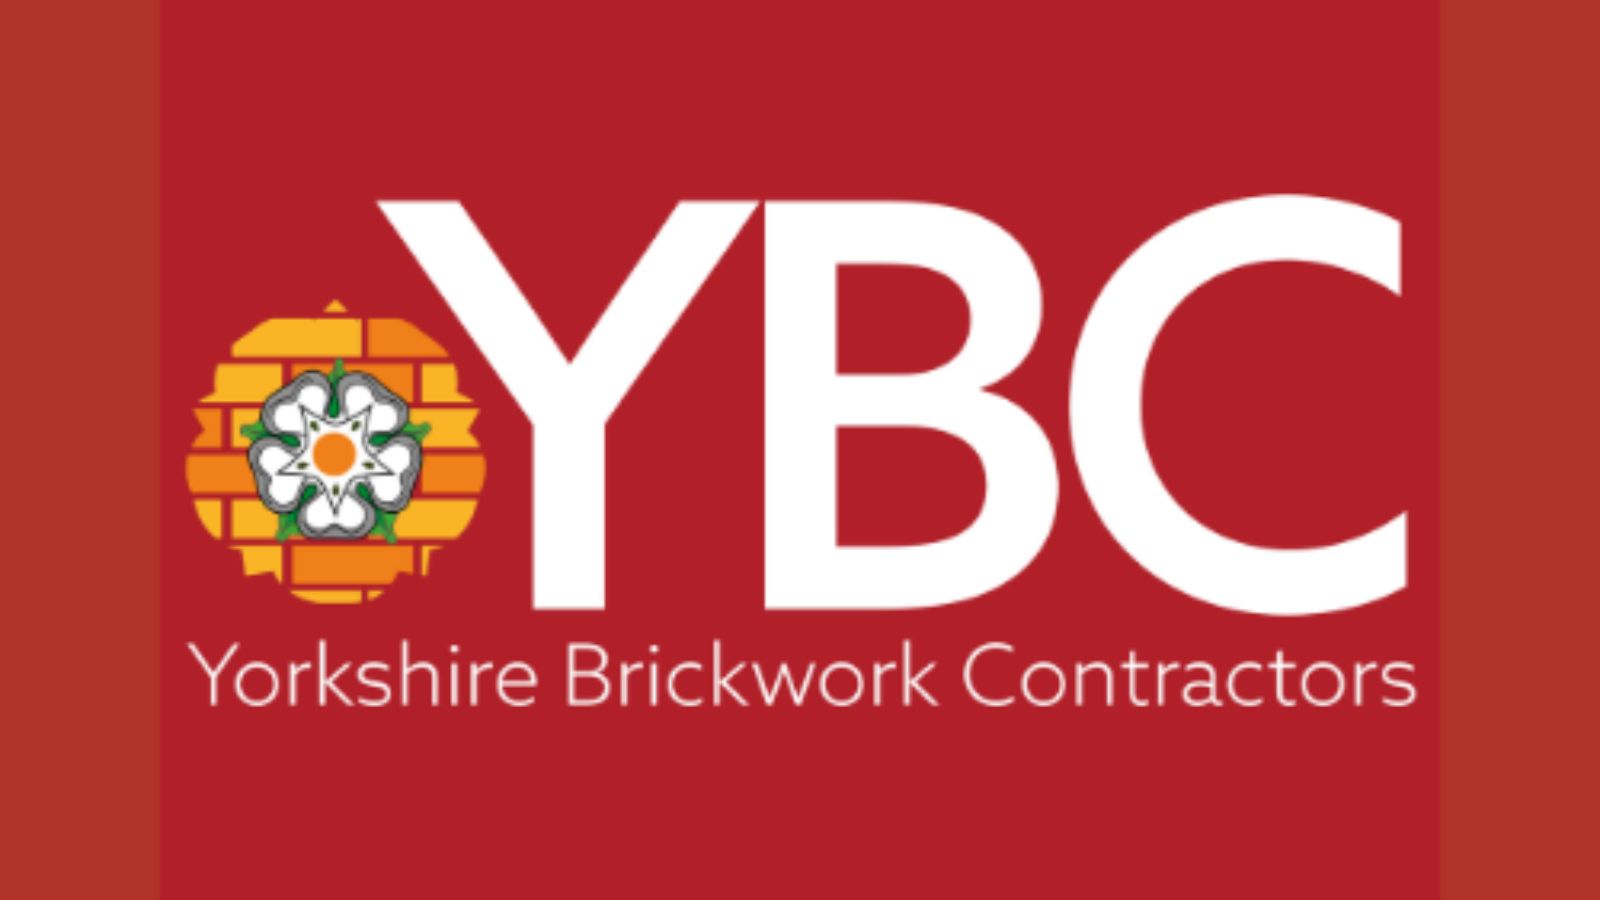 Yorkshire Brickwork Contractors